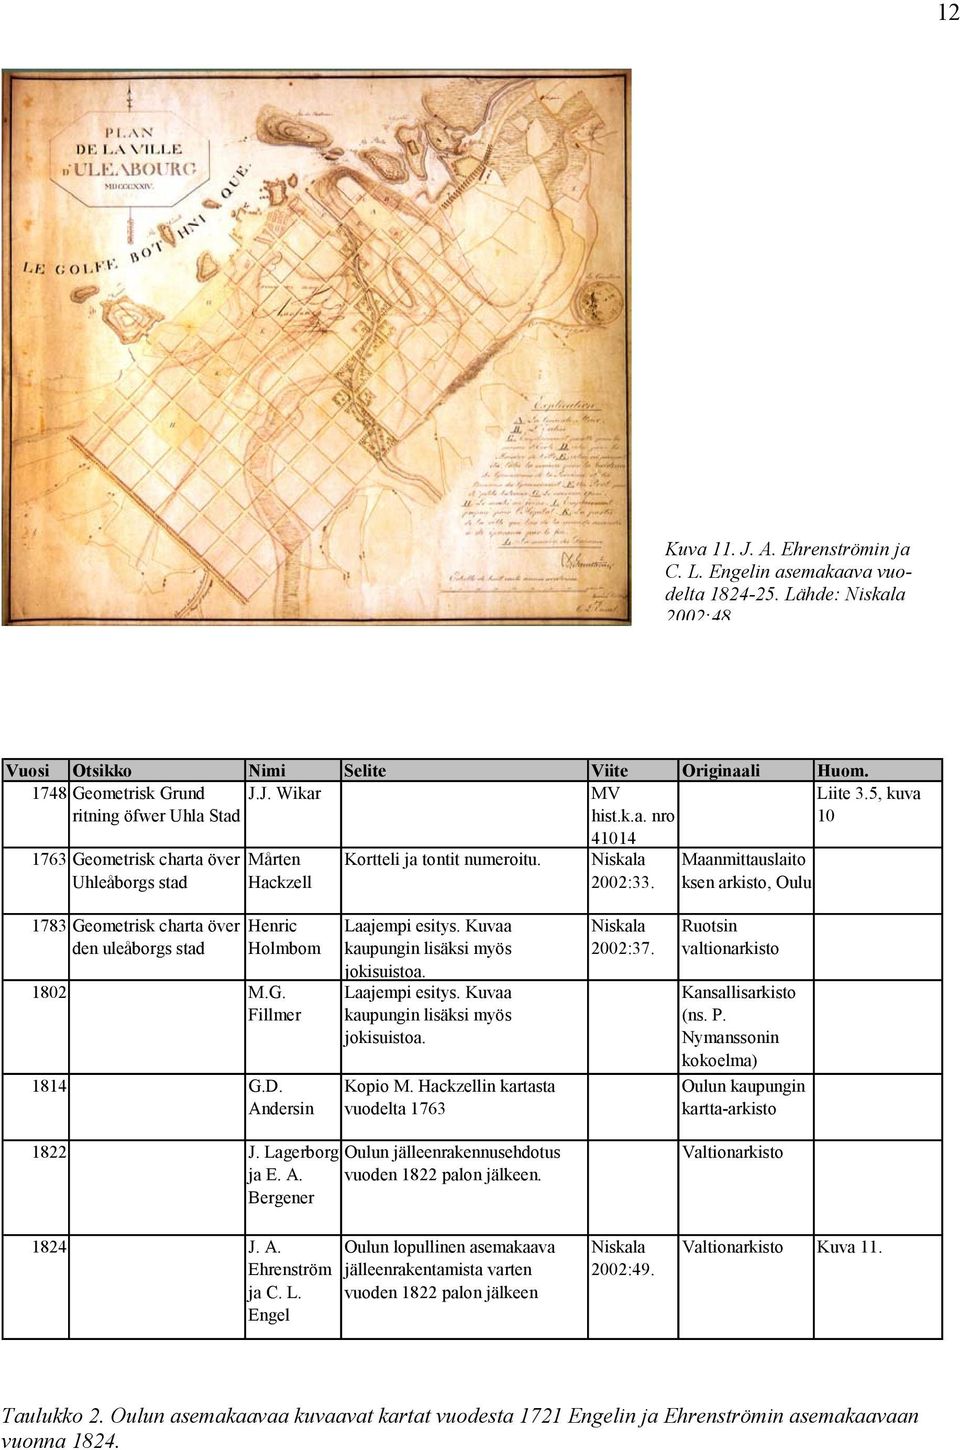 Maanmittauslaito ksen arkisto, Oulu 1783 Geometrisk charta över den uleåborgs stad Henric Holmbom 1802 M.G. Fillmer 1814 G.D. Andersin Laajempi esitys. Kuvaa kaupungin lisäksi myös jokisuistoa.